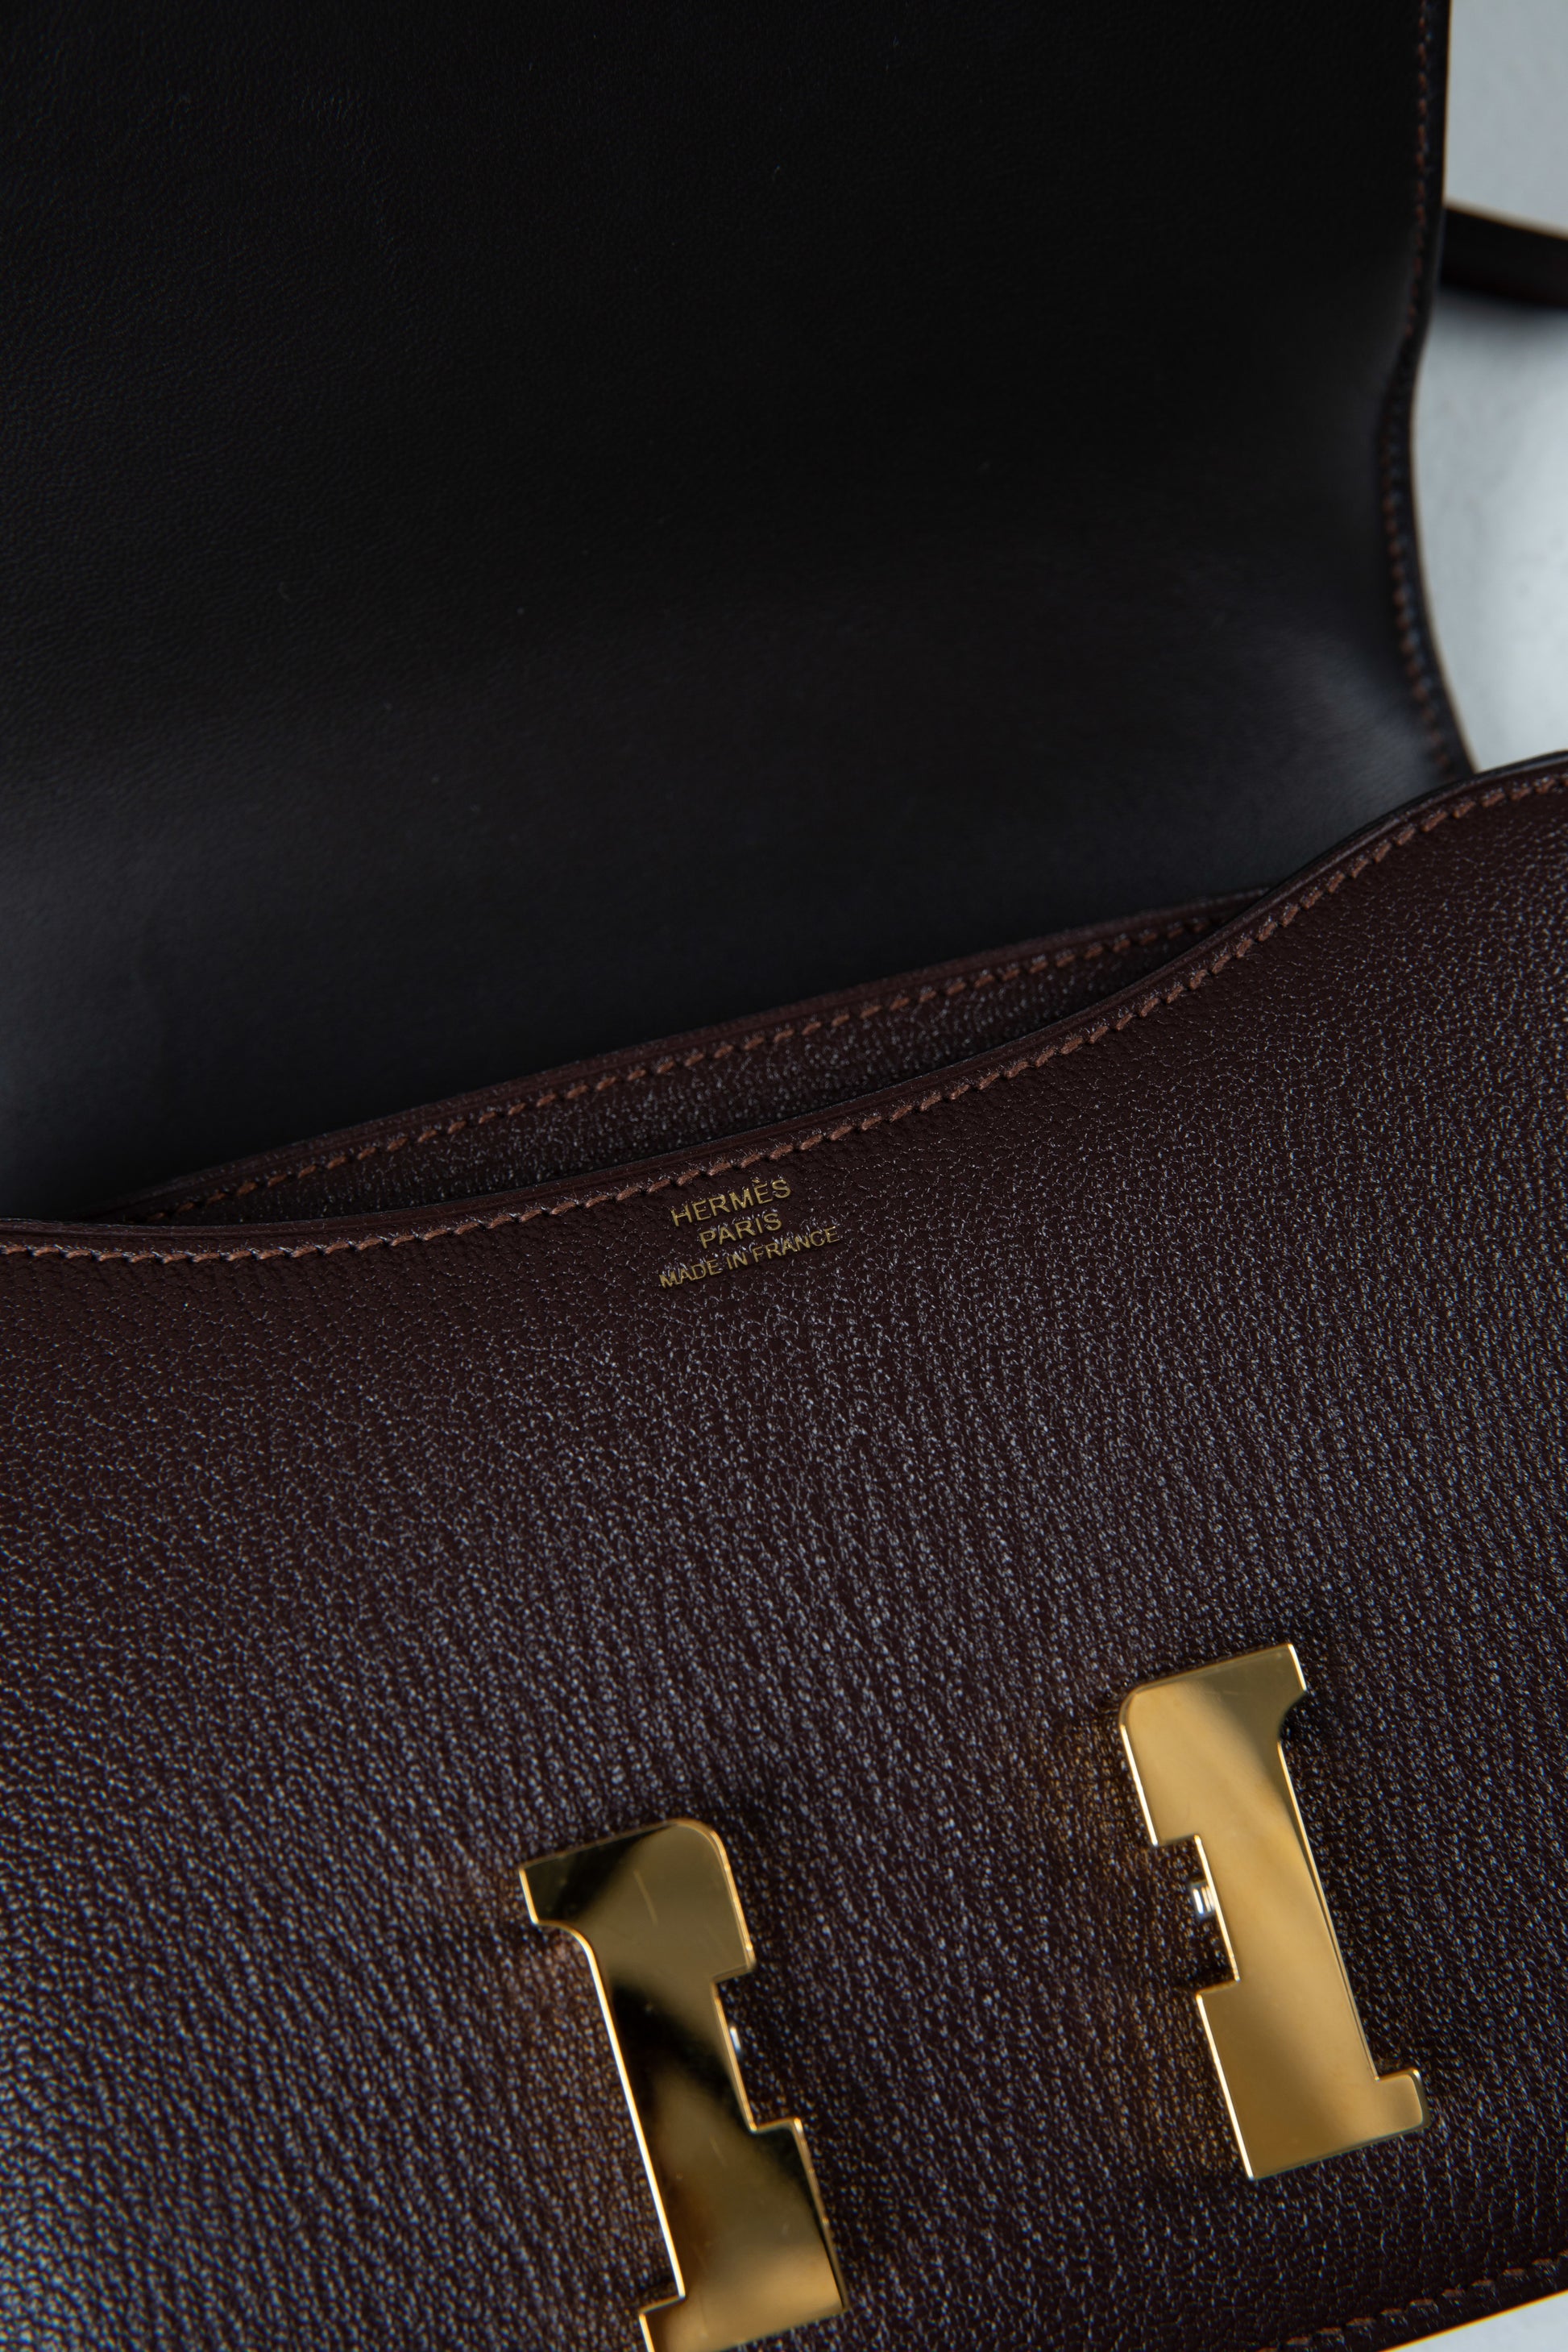 Hermes 25cm Brique Chevre Leather Constance Bag with Gold Hardware., Lot  #58161